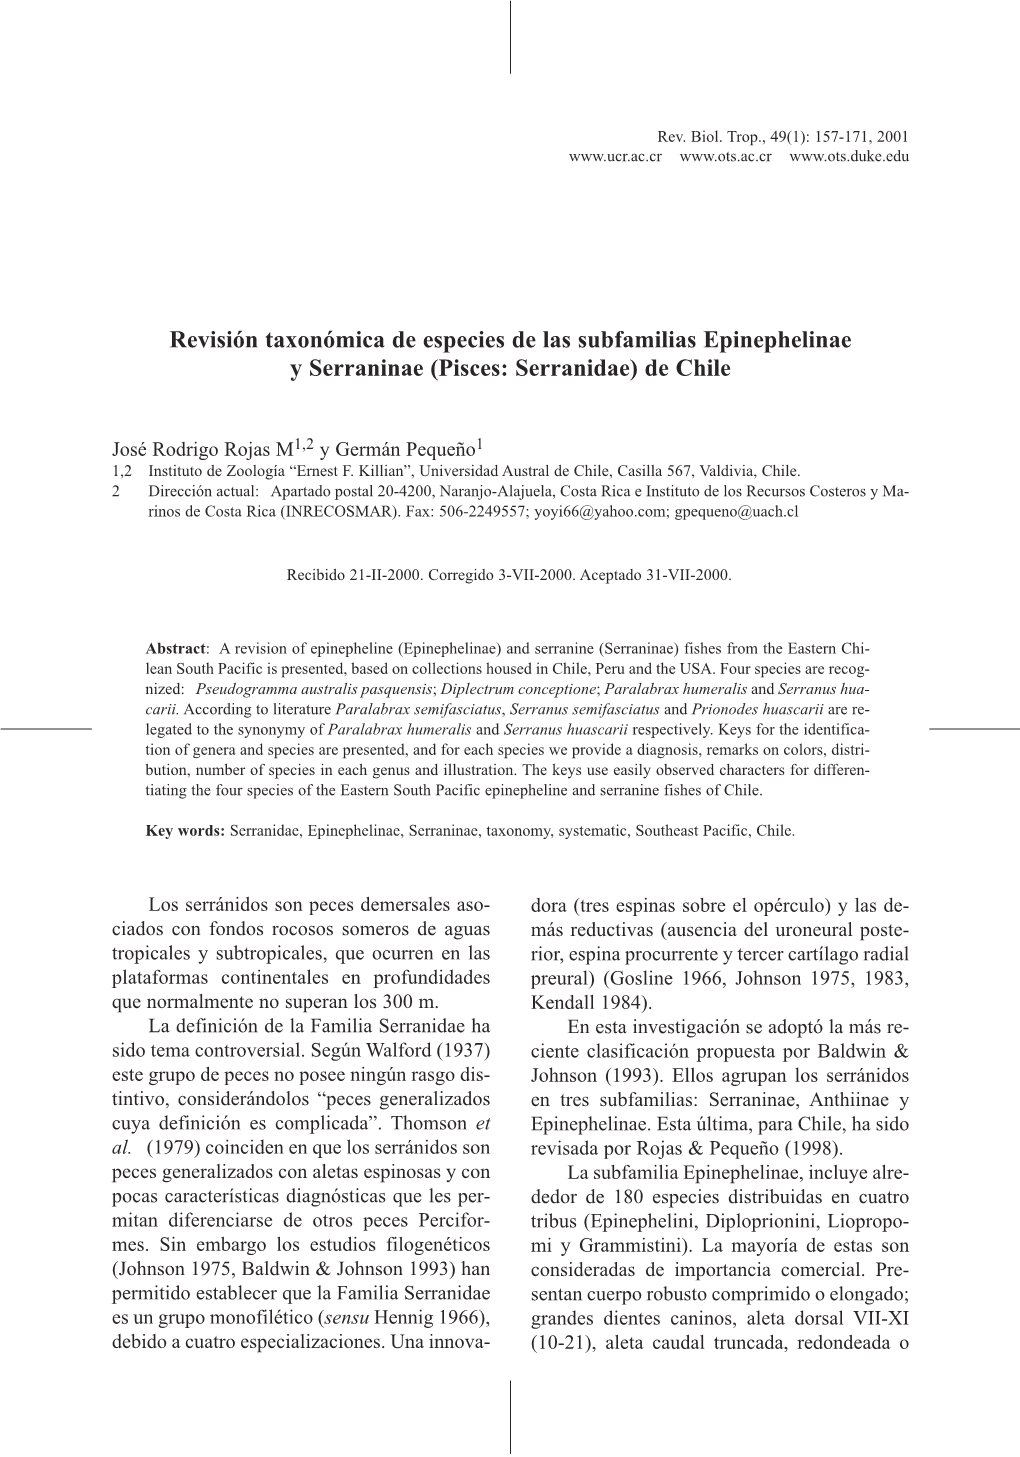 Revisión Taxonómica De Especies De Las Subfamilias Epinephelinae Y Serraninae (Pisces: Serranidae) De Chile